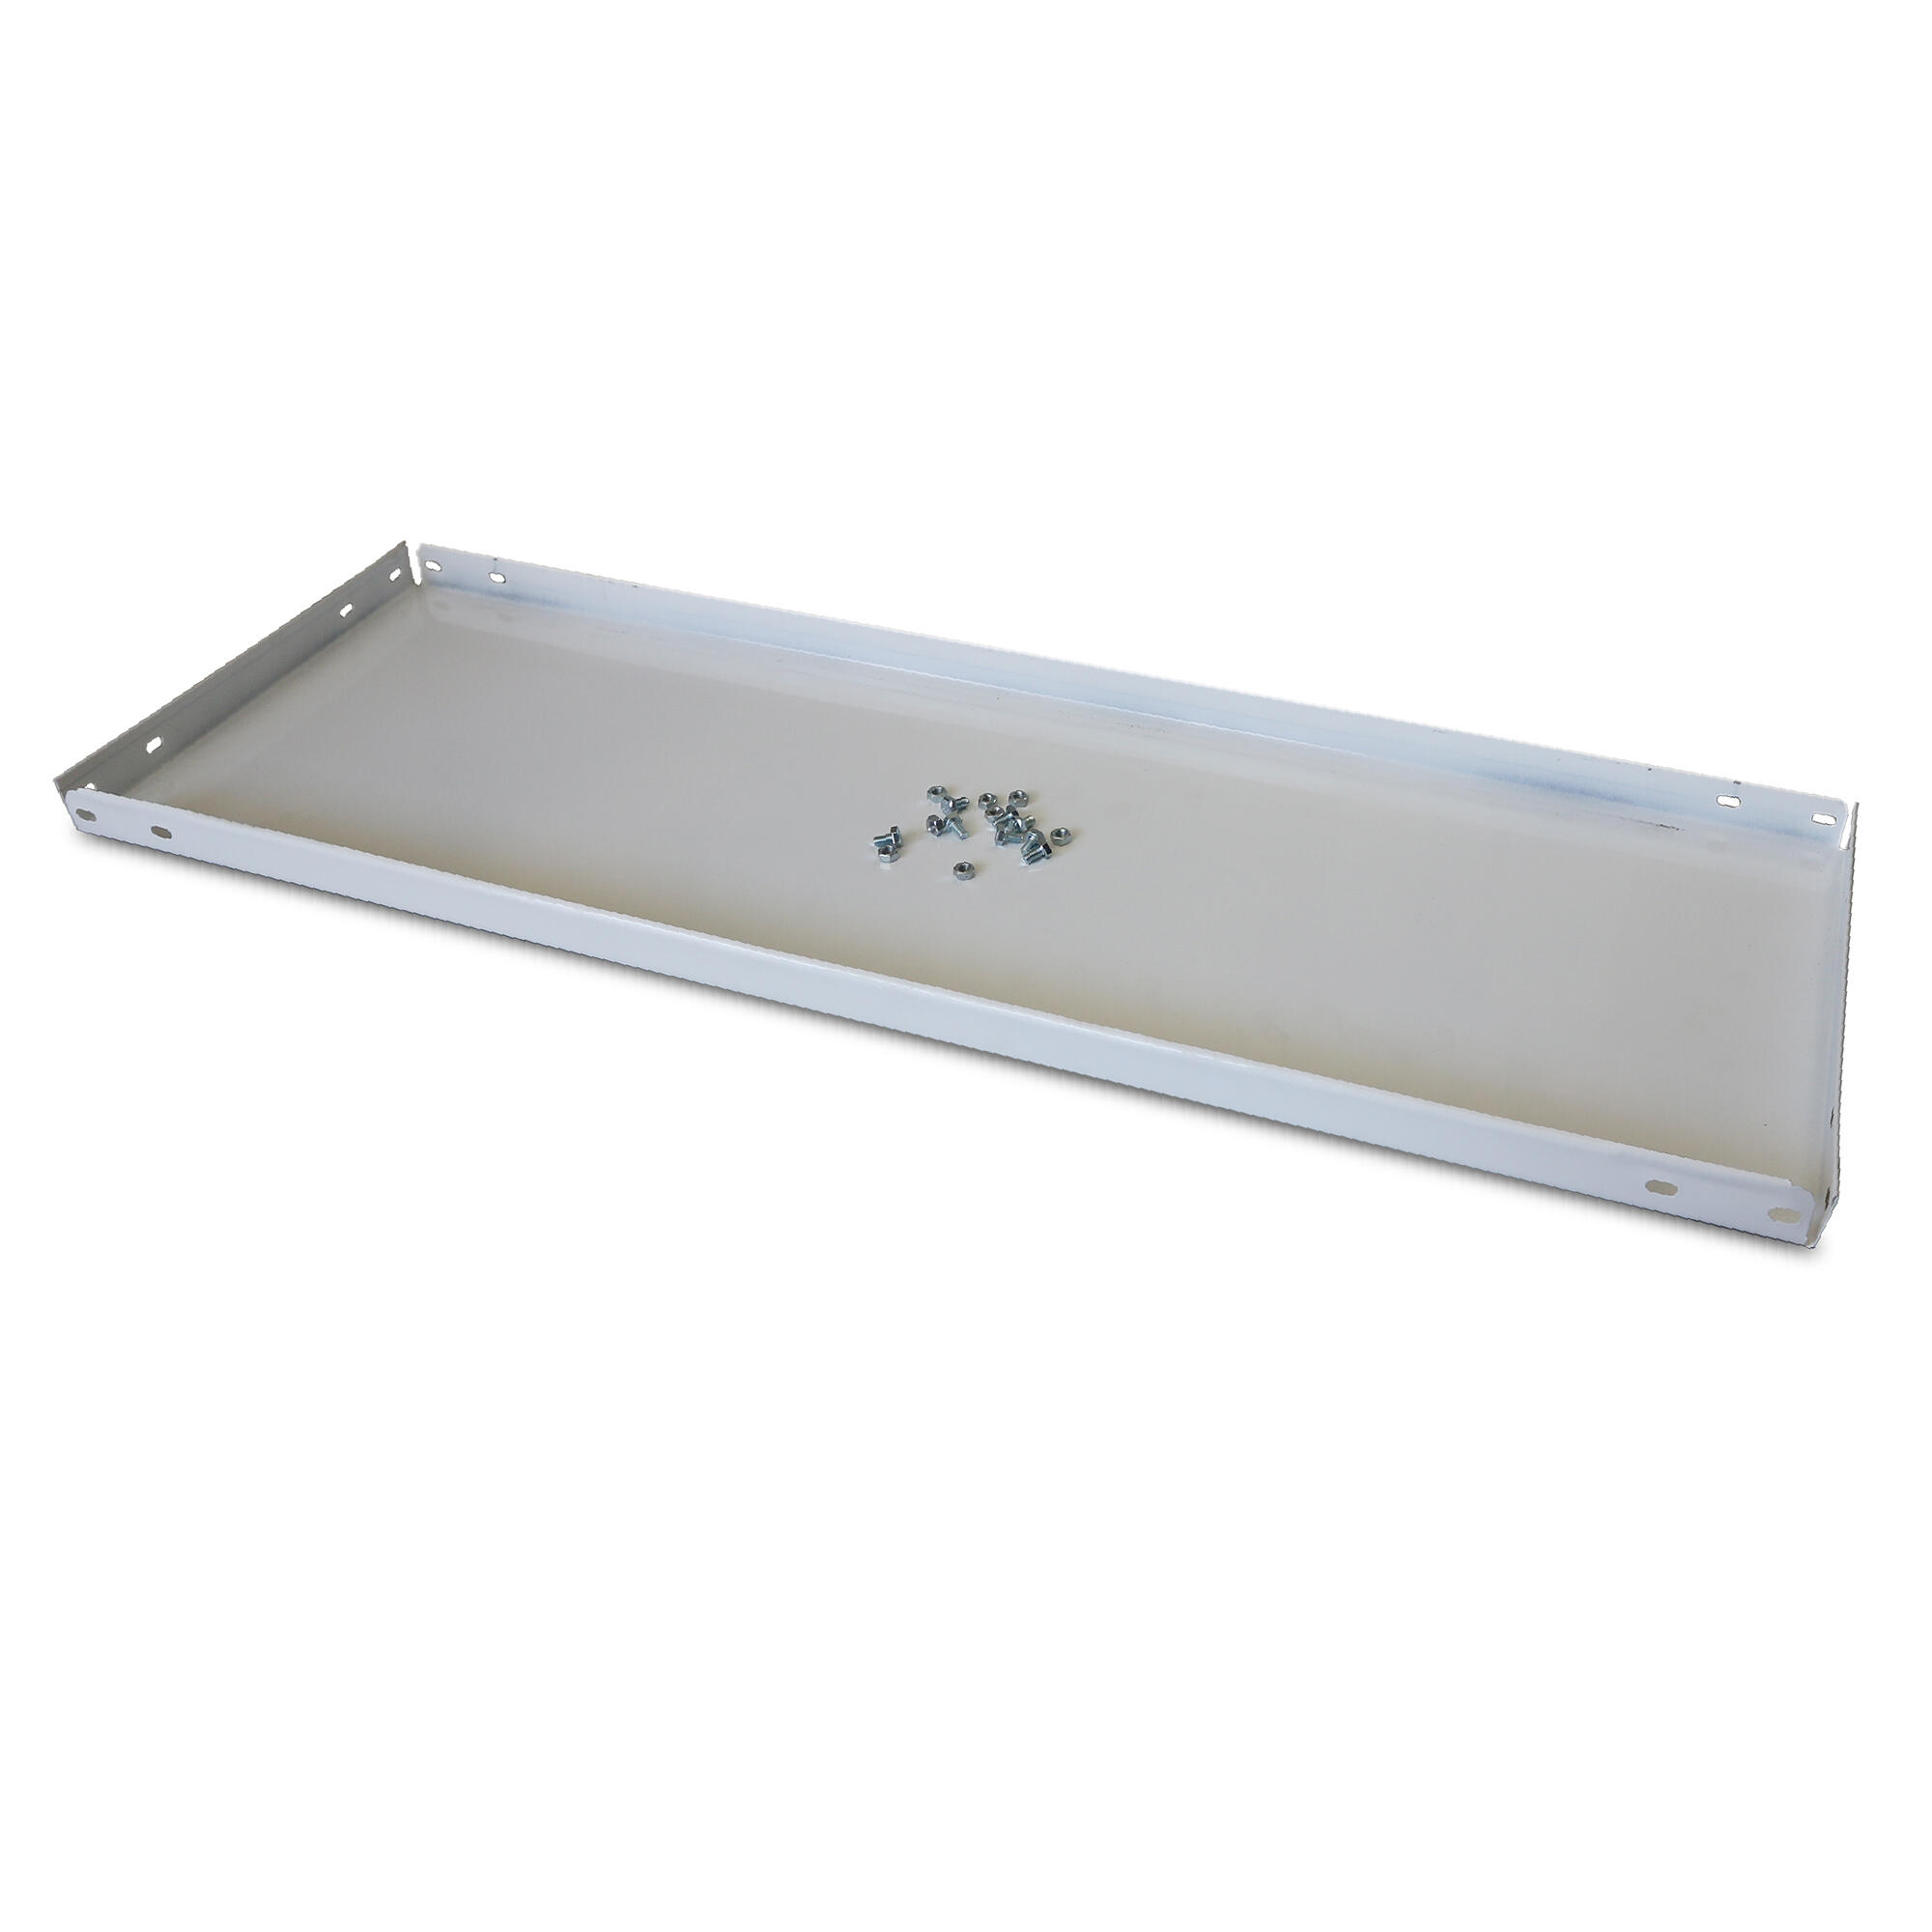 Balda recta para sistema de estantes de acero blanco de 100x30cm